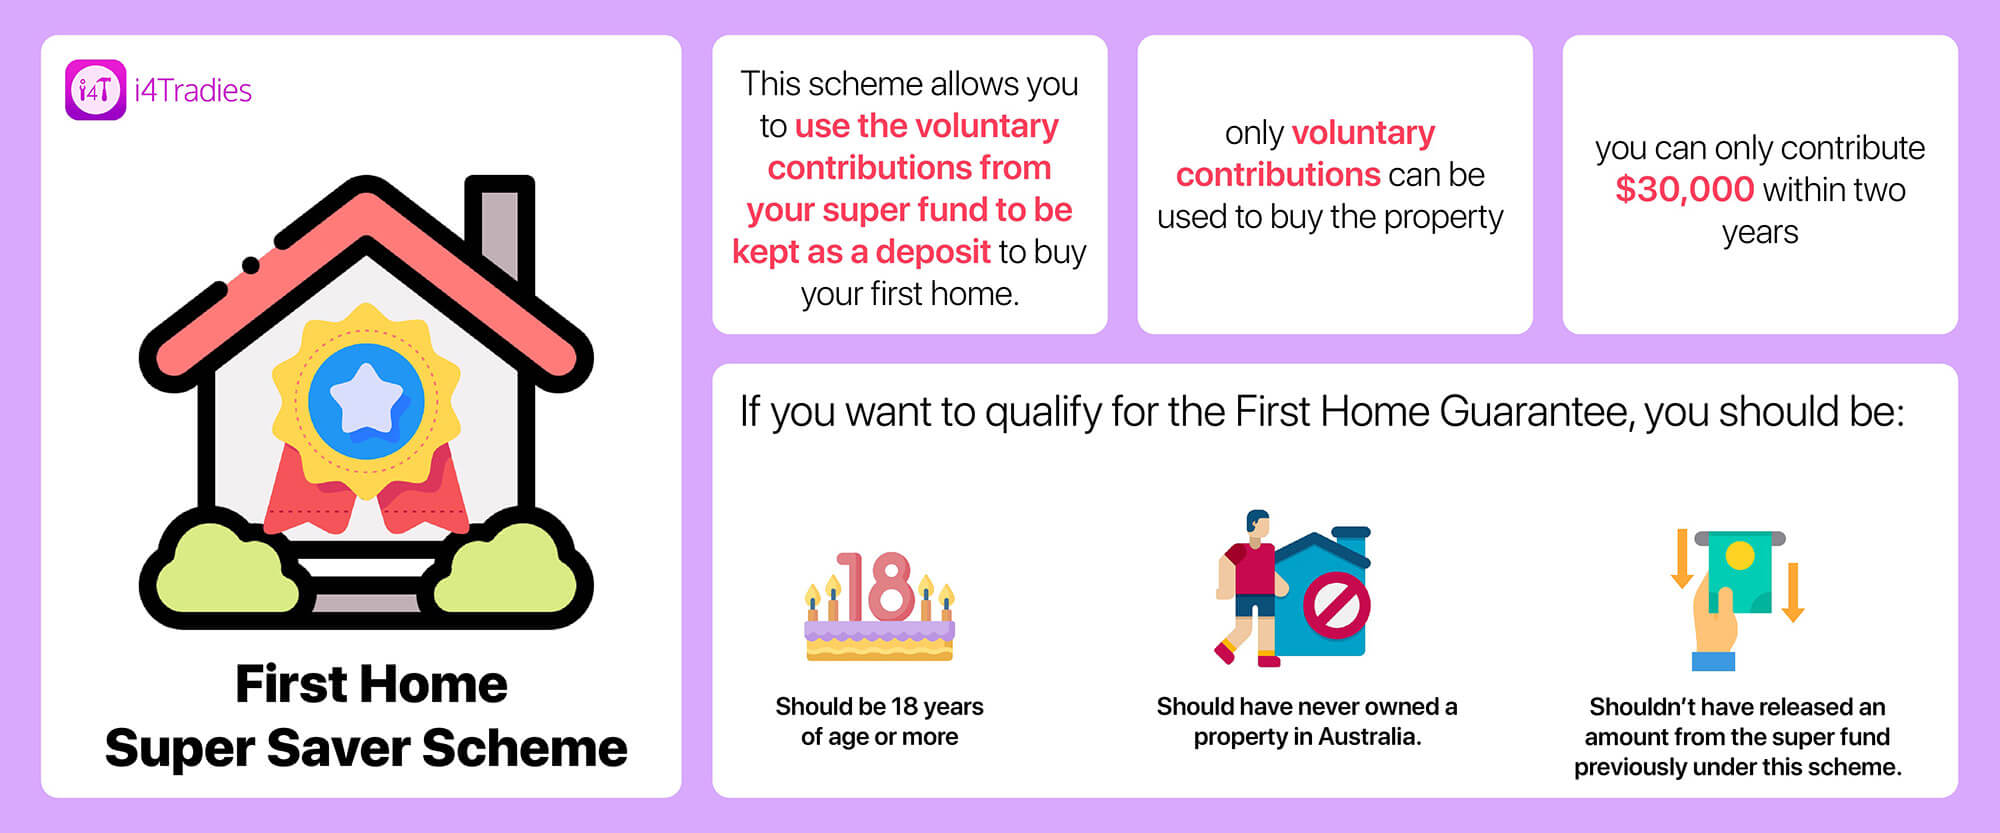 First home super saver scheme - i4Tradies